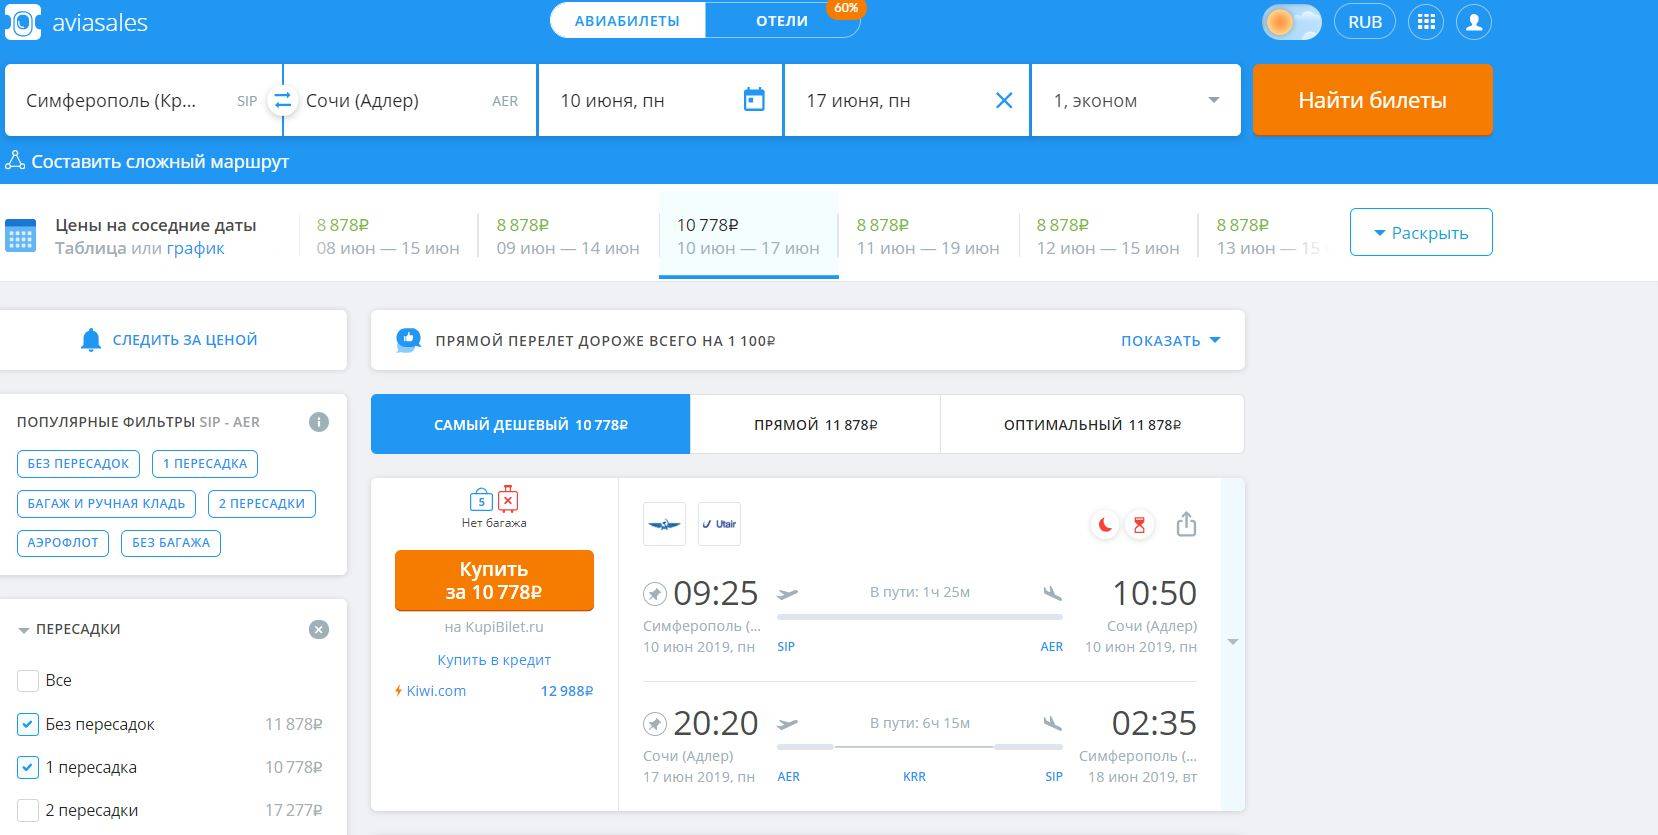 купить авиабилеты в оренбурге онлайн дешево